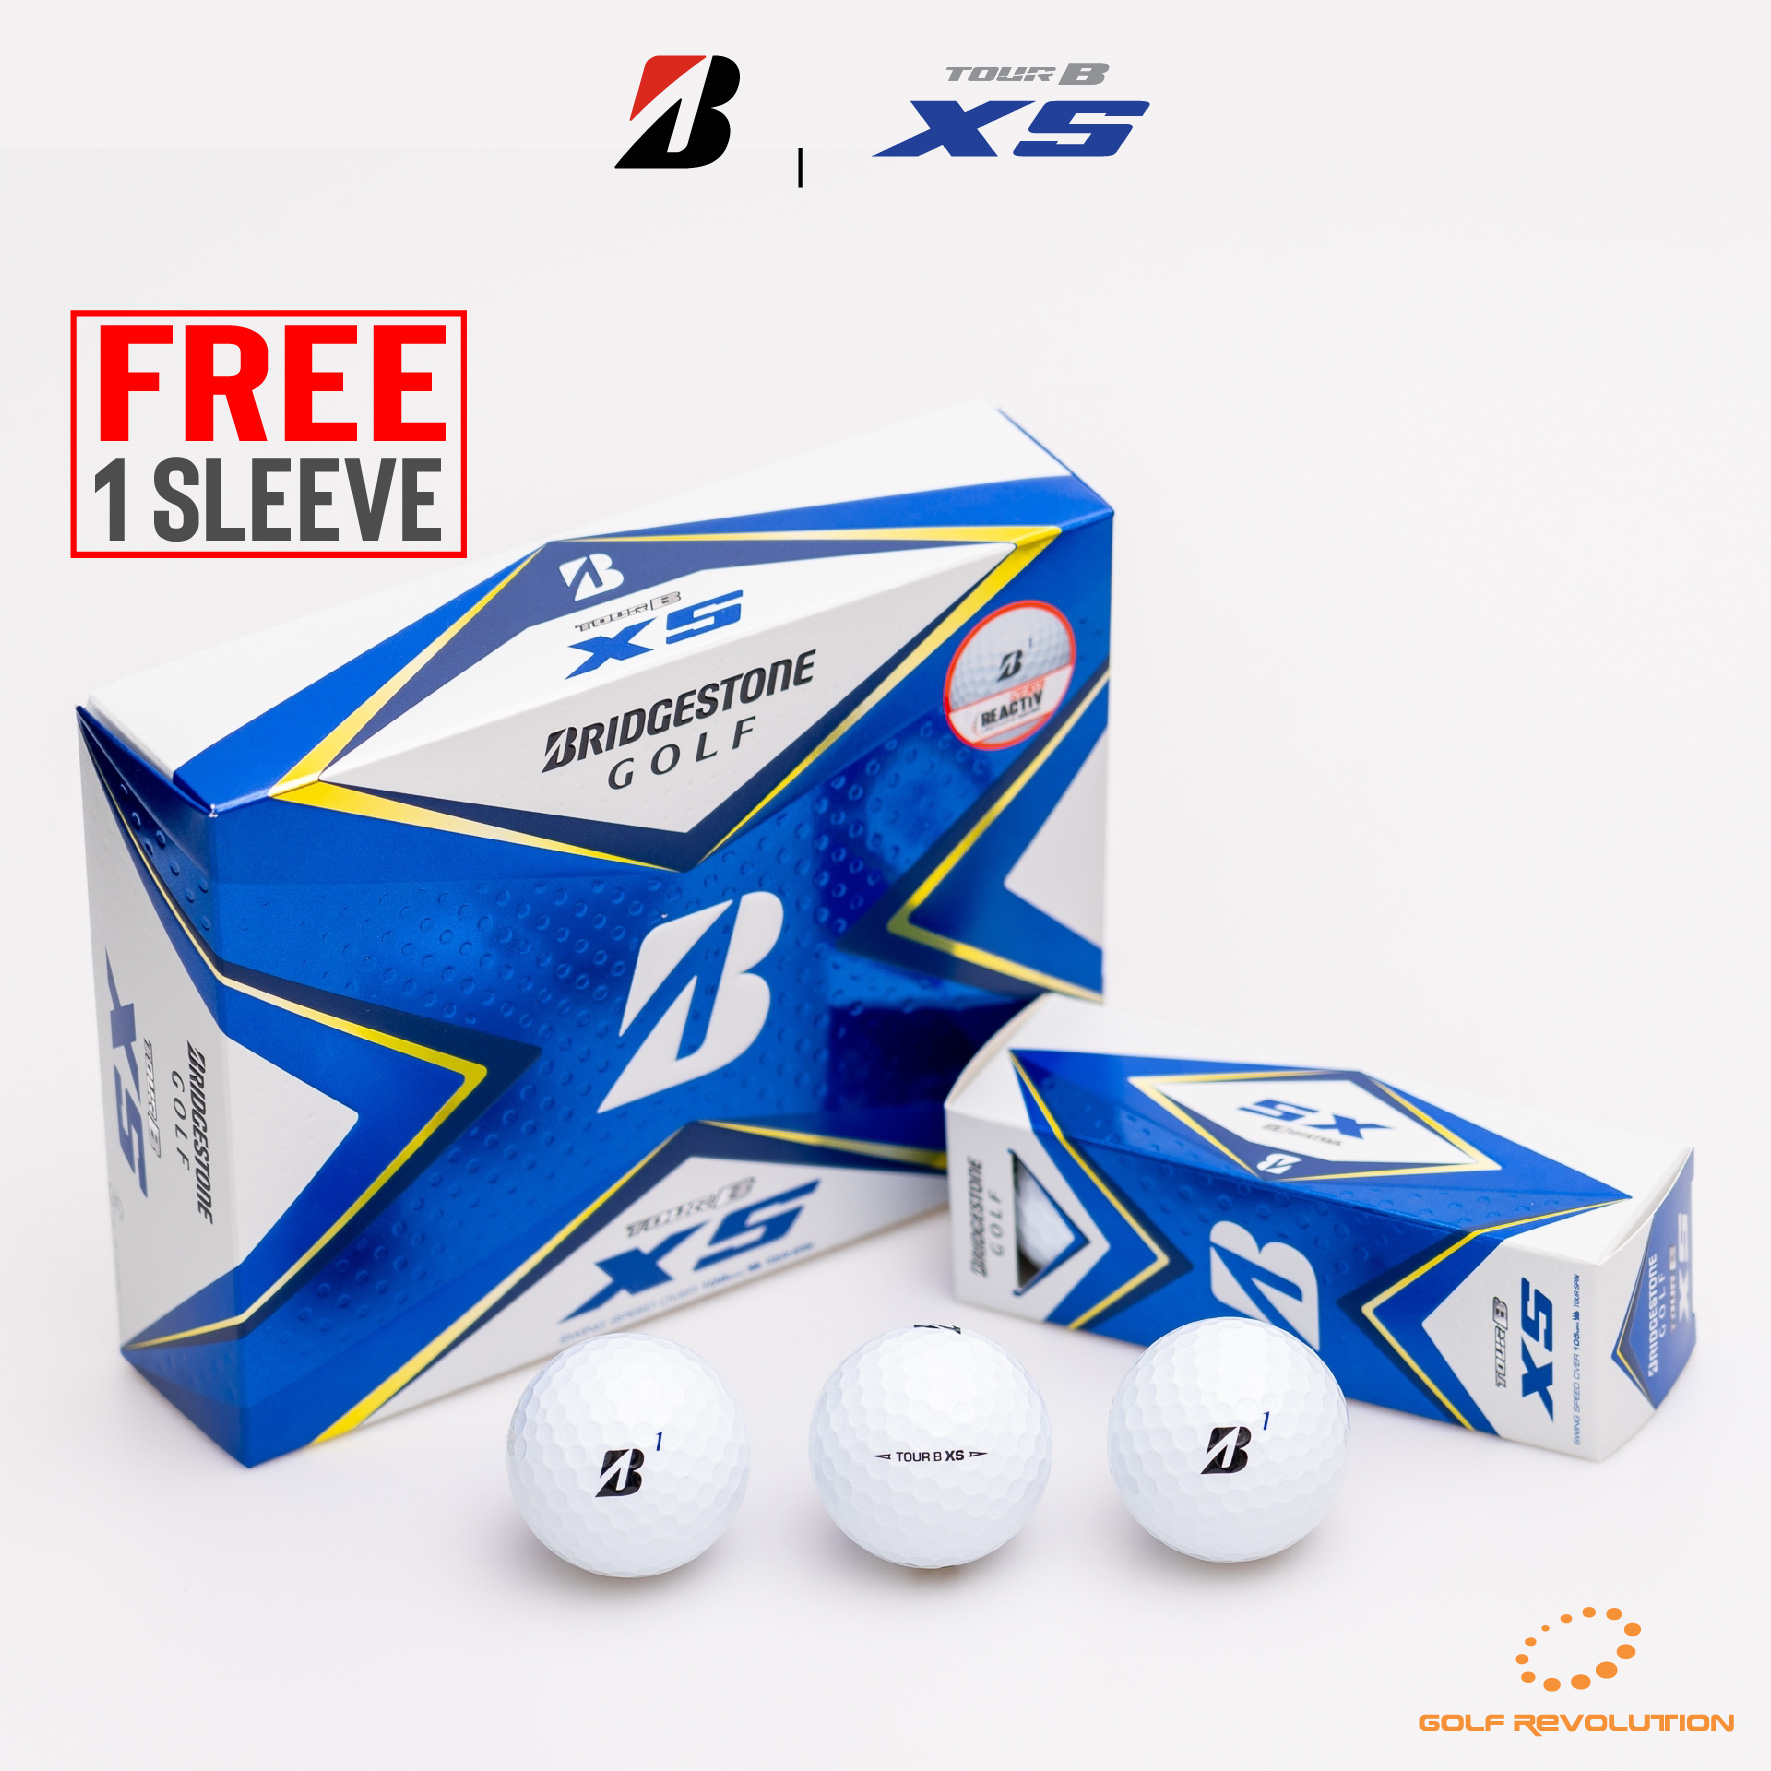 ลูกกอล์ฟ Bridgestone Golf - 2020 TourB XS White ซื้อ 1 แถม 1 หลอด (Buy1, Free1 sleeve)